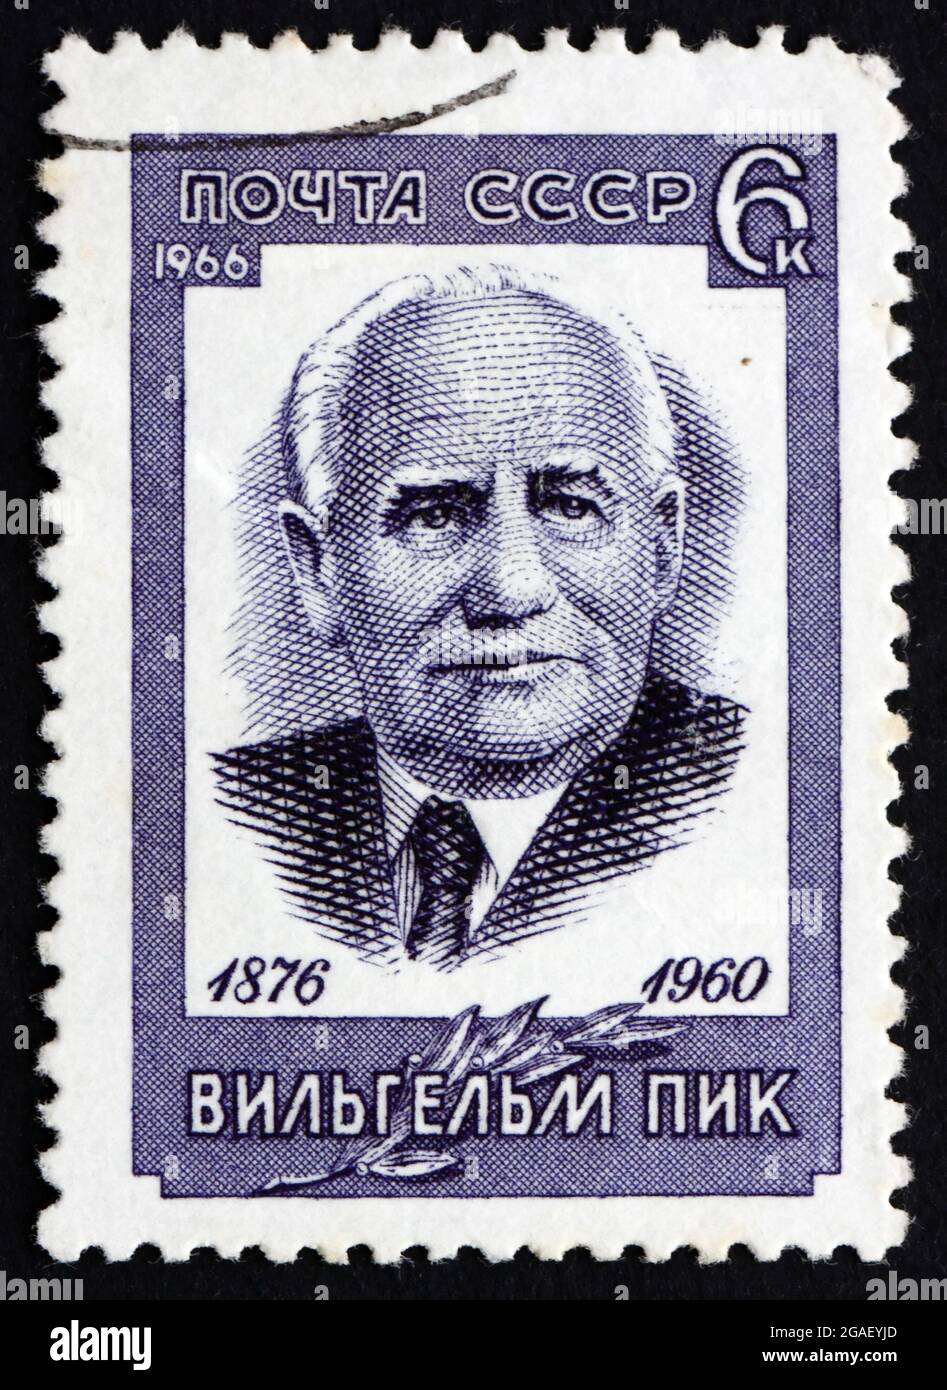 RUSSLAND - UM 1966: Eine in Russland gedruckte Briefmarke zeigt Wilhelm Pieck, deutscher Politiker und Kommunist, den ersten Präsidenten der Deutschen Demokratischen Republik Stockfoto